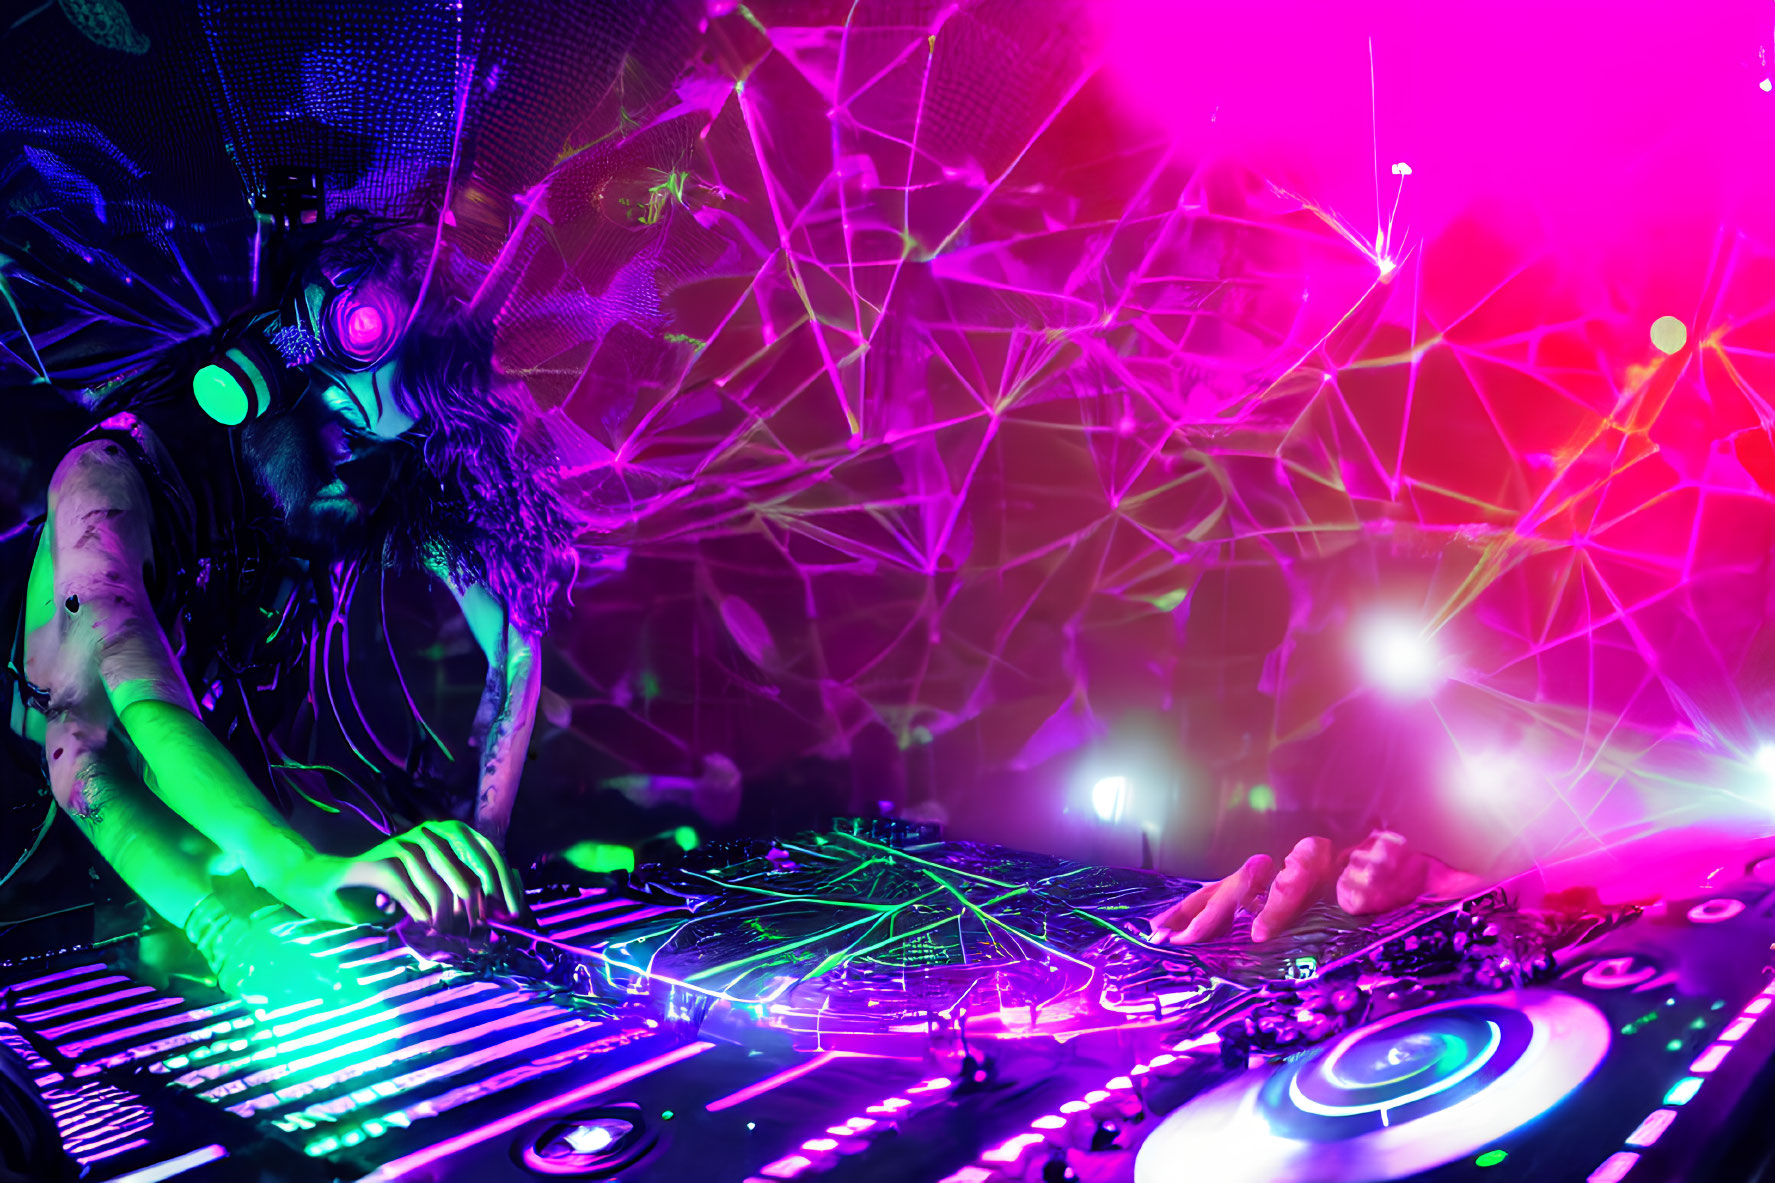 Neon-lit DJ mixing tracks in vibrant club scene